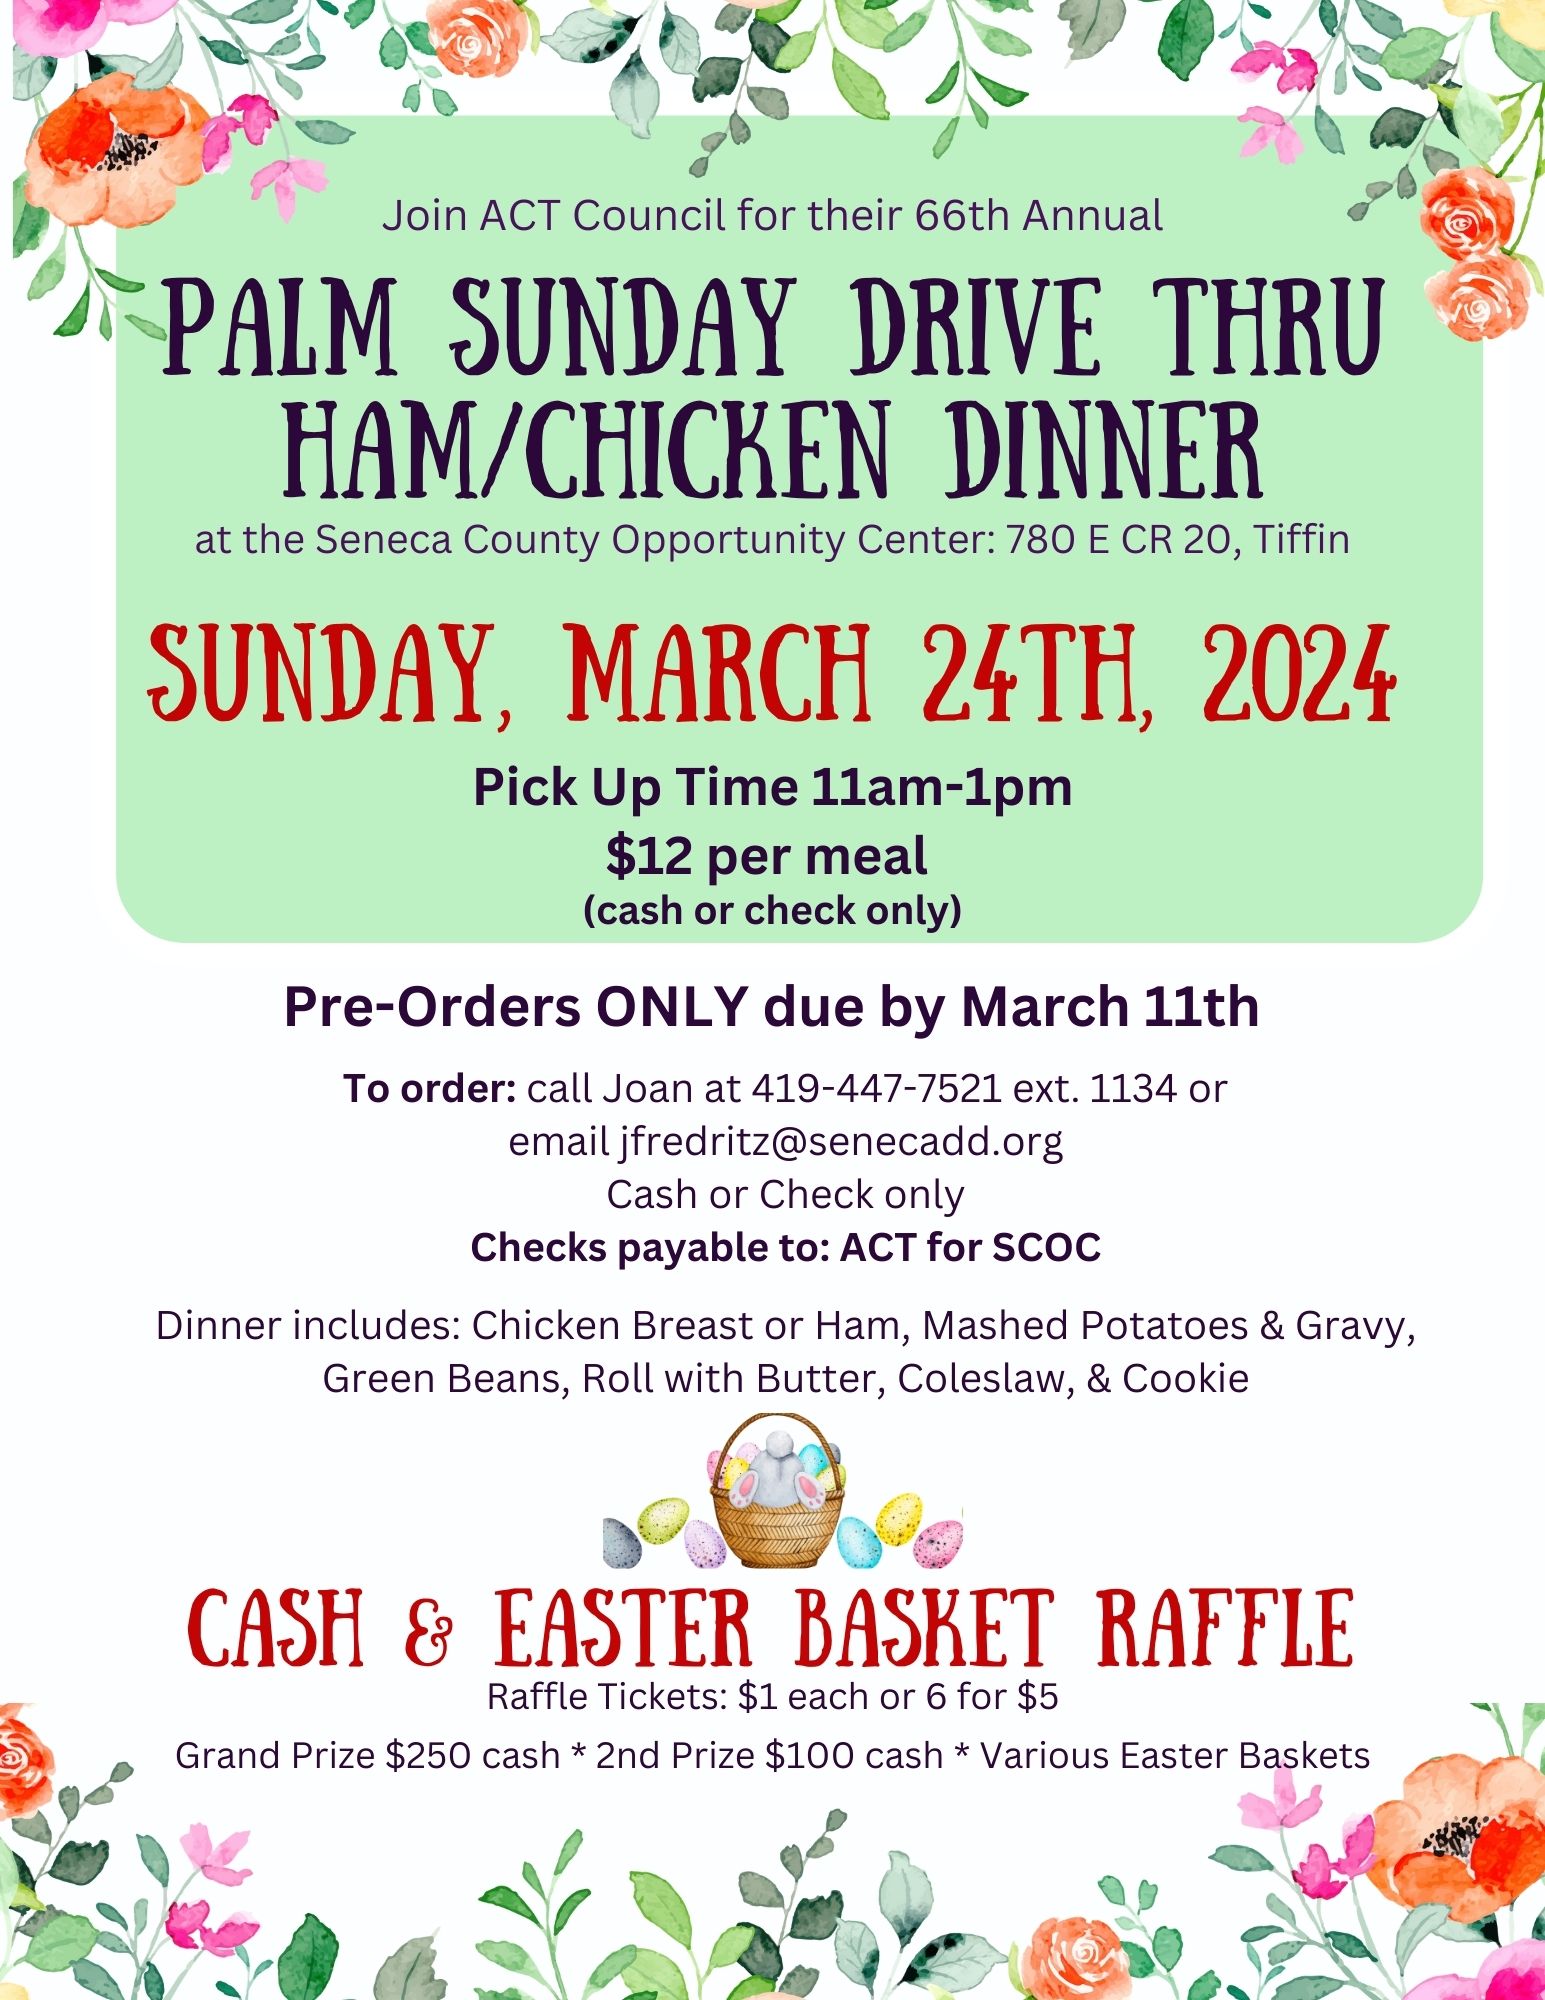 Palm Sunday Drive Thru Ham/Chicken Dinner